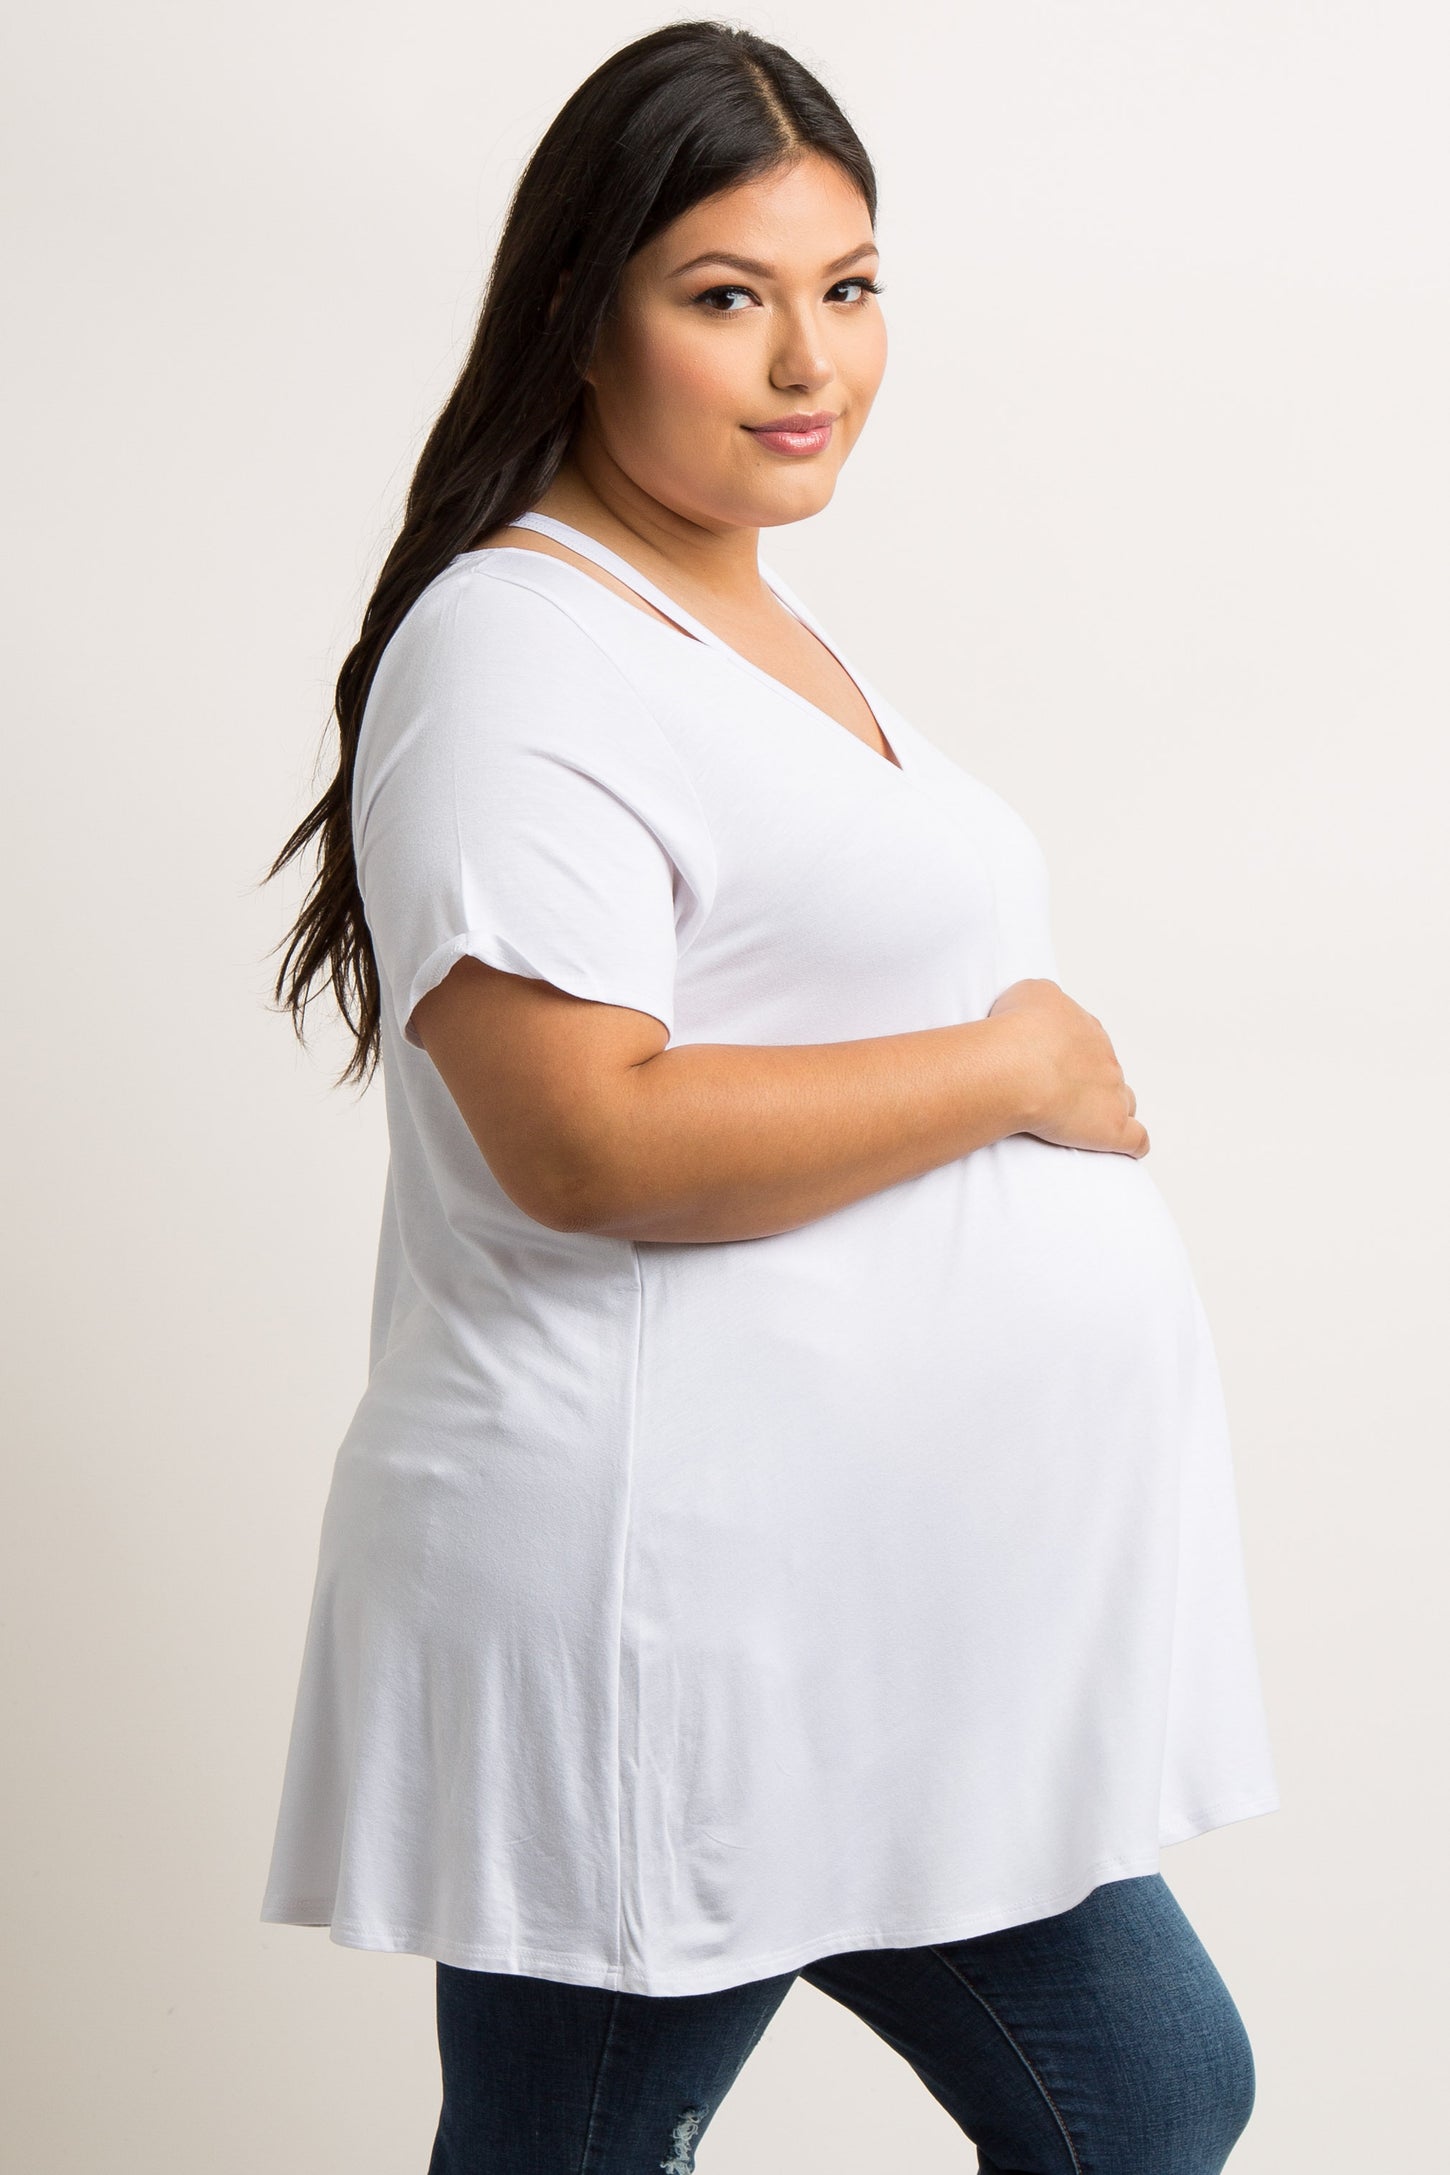 White Cutout Shoulder Plus Maternity Top